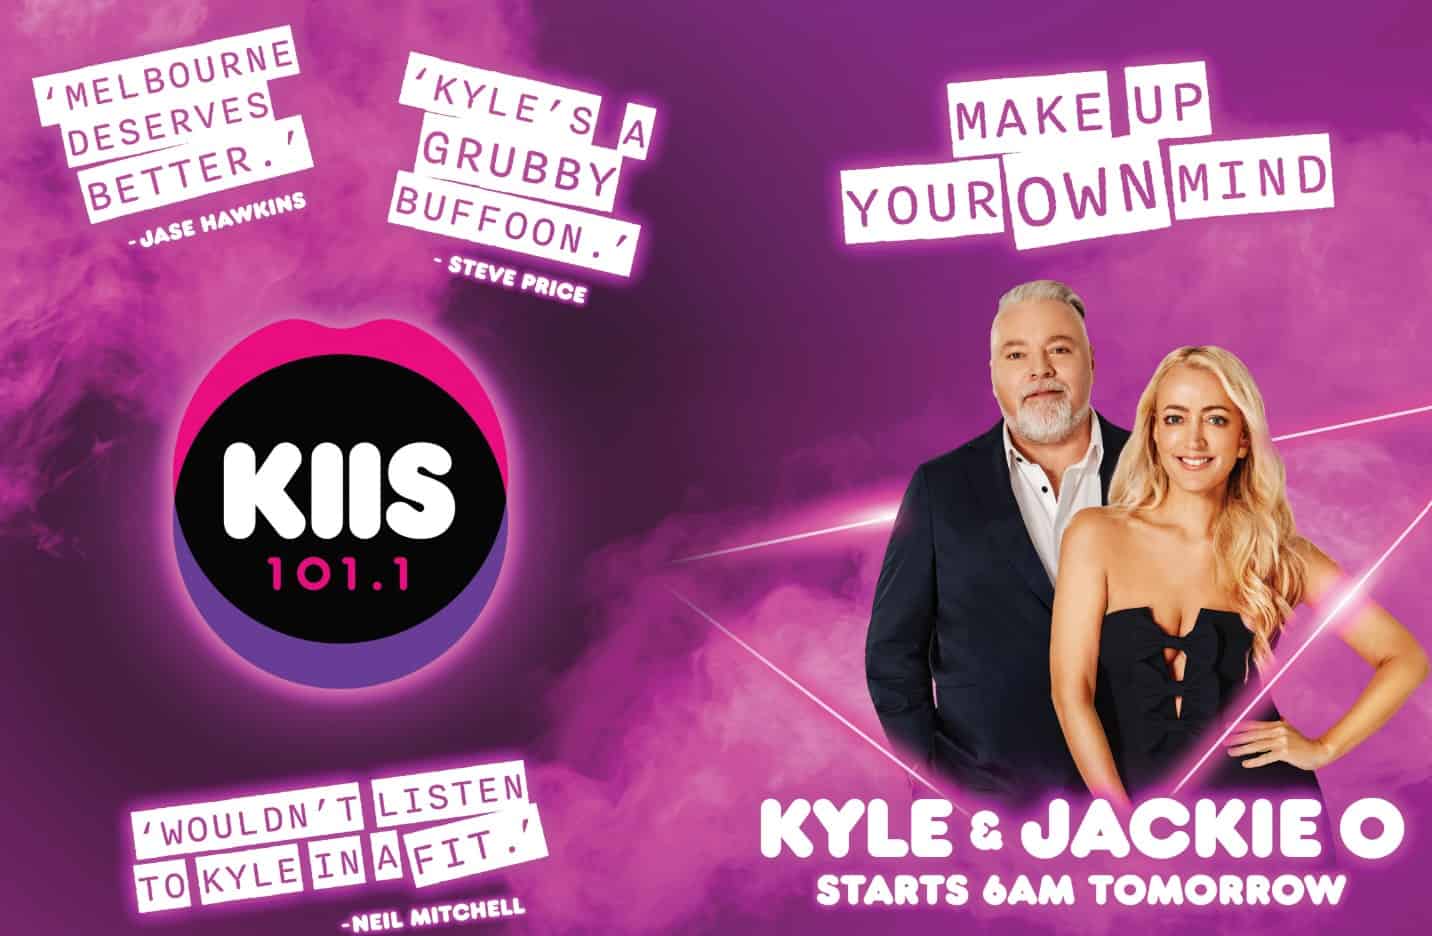 Kyle & Jackie O x KIIS 101.1 Launch Campaign 